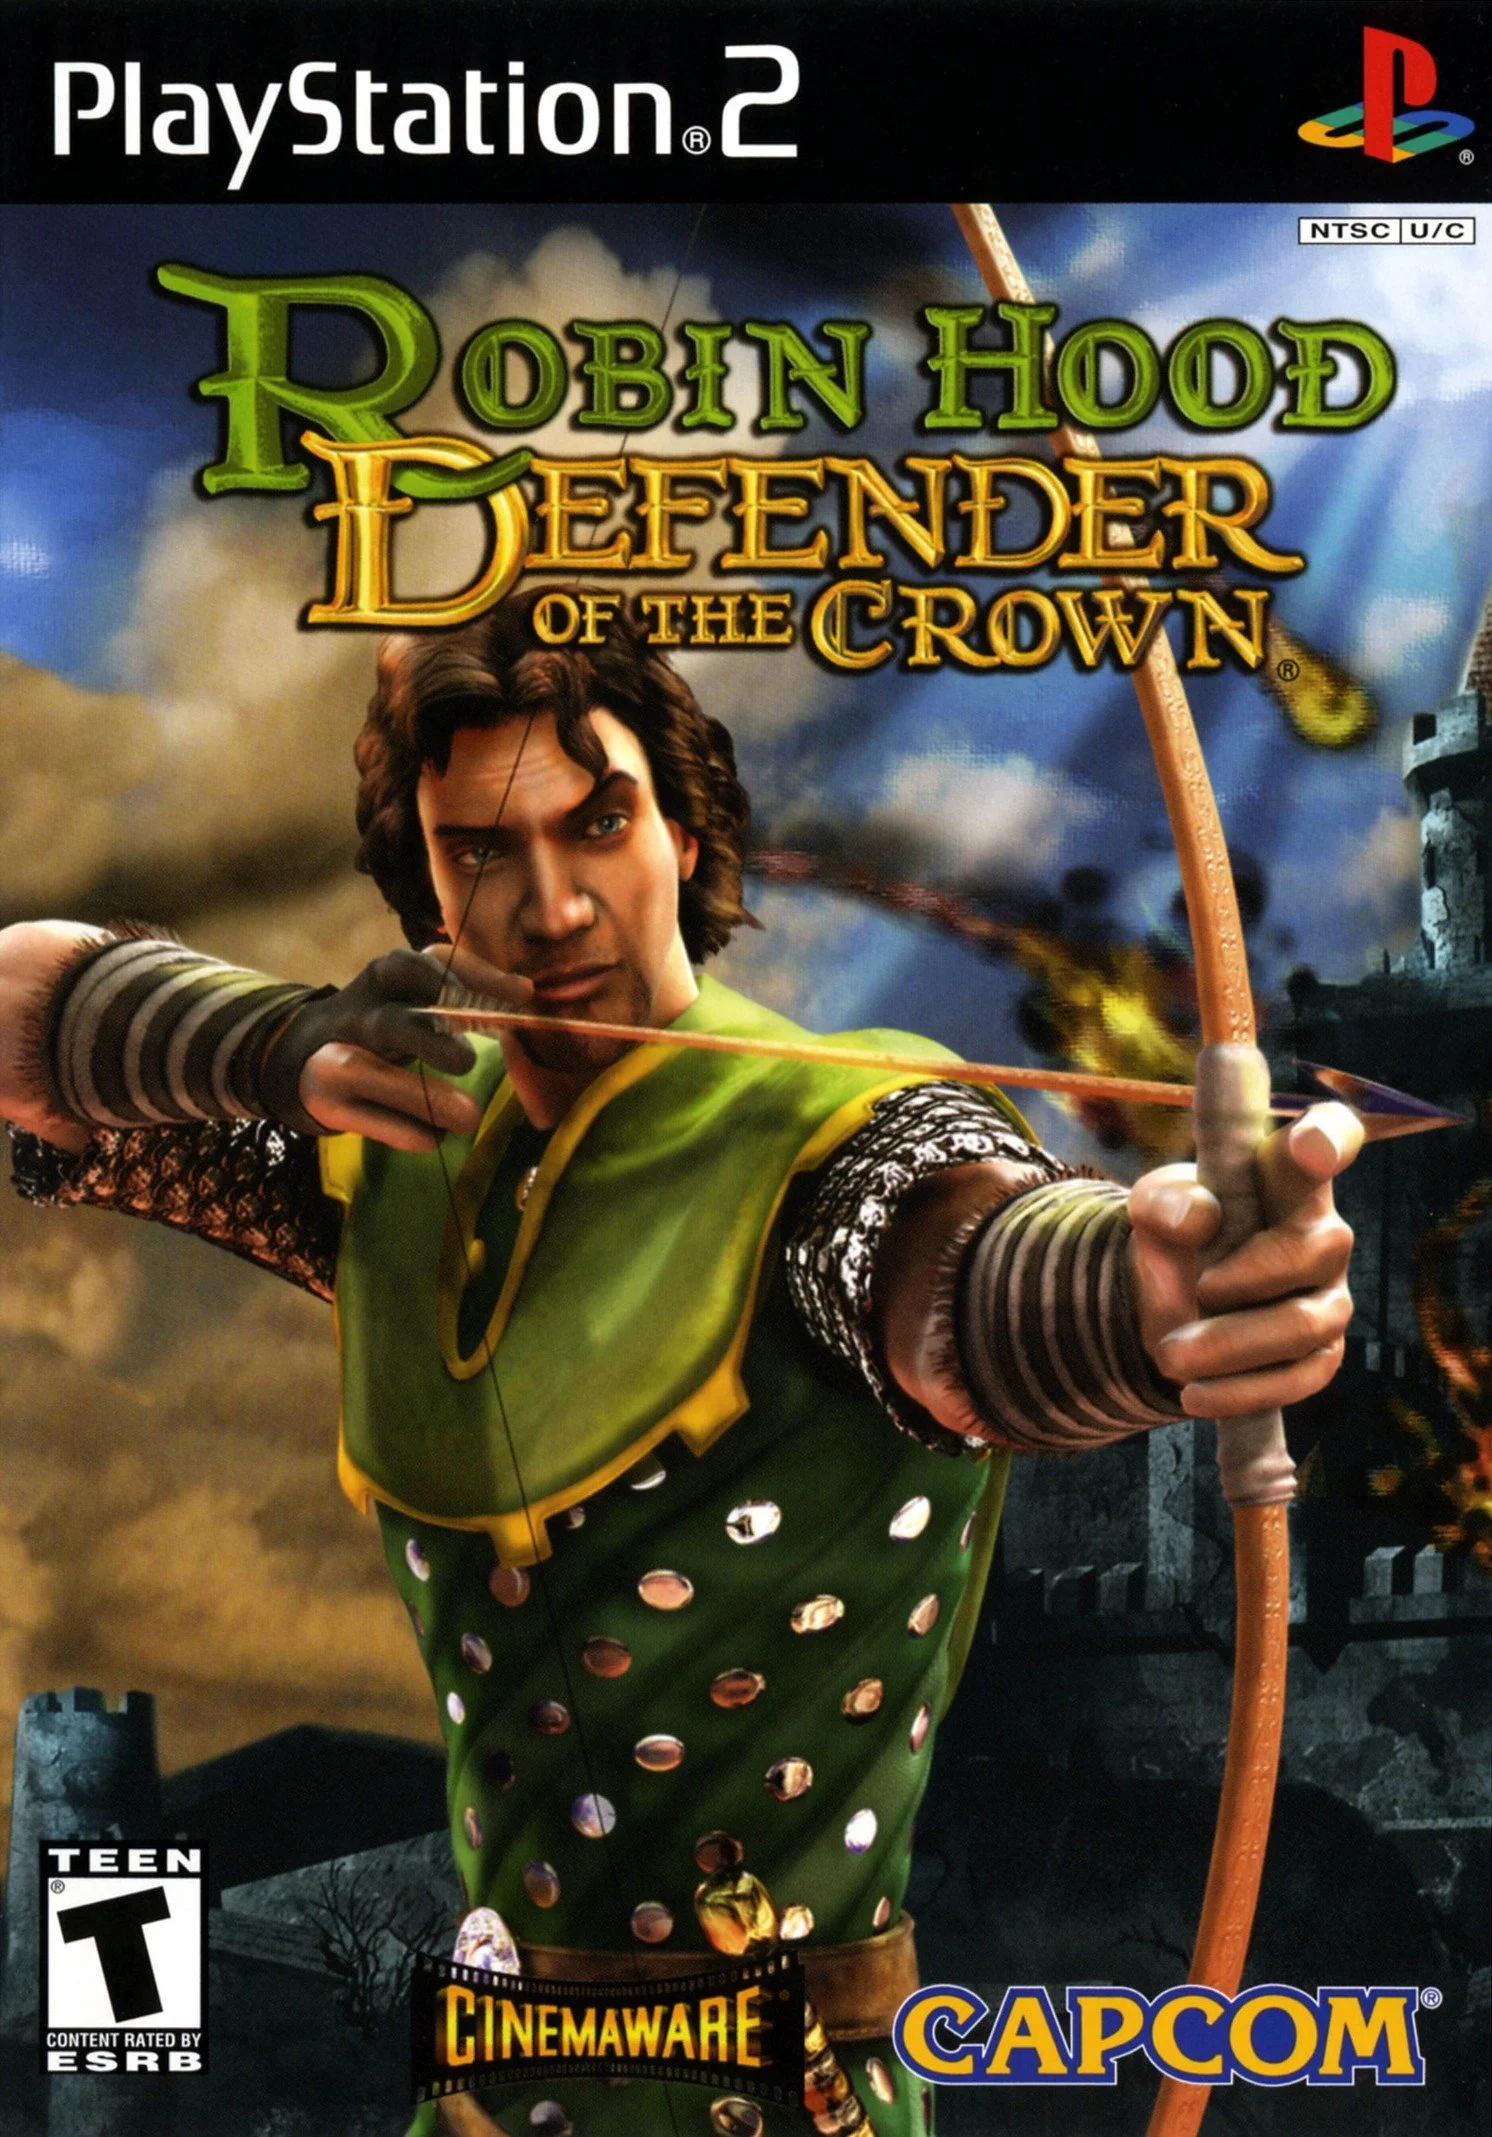 Robin Hood: Defender of the Crown